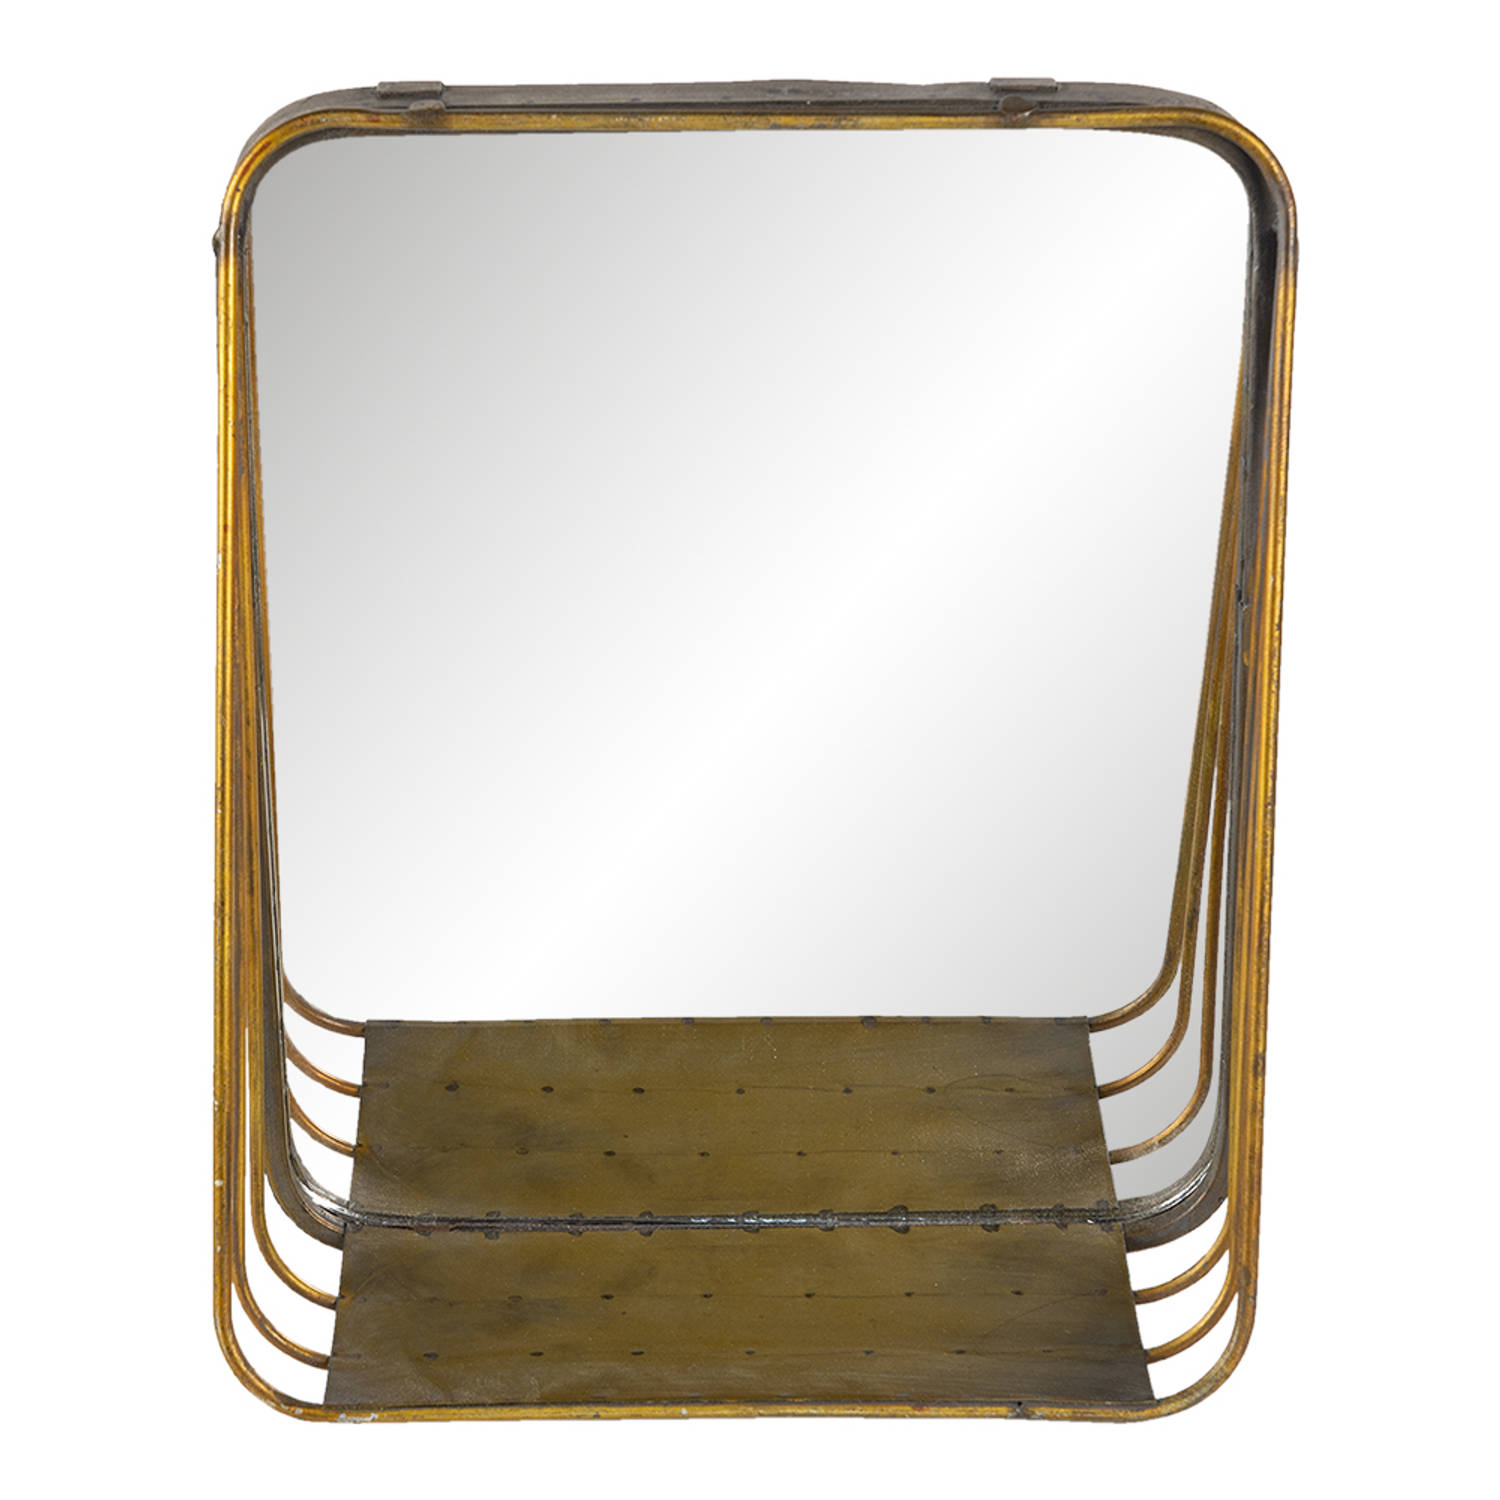 HAES DECO - Rechthoekige Spiegel met schapje - Kleur Koperkleurig - Formaat 26x11x32 cm - Materiaal Metaal / Glas - Wandspiegel, Spiegel Rechthoek